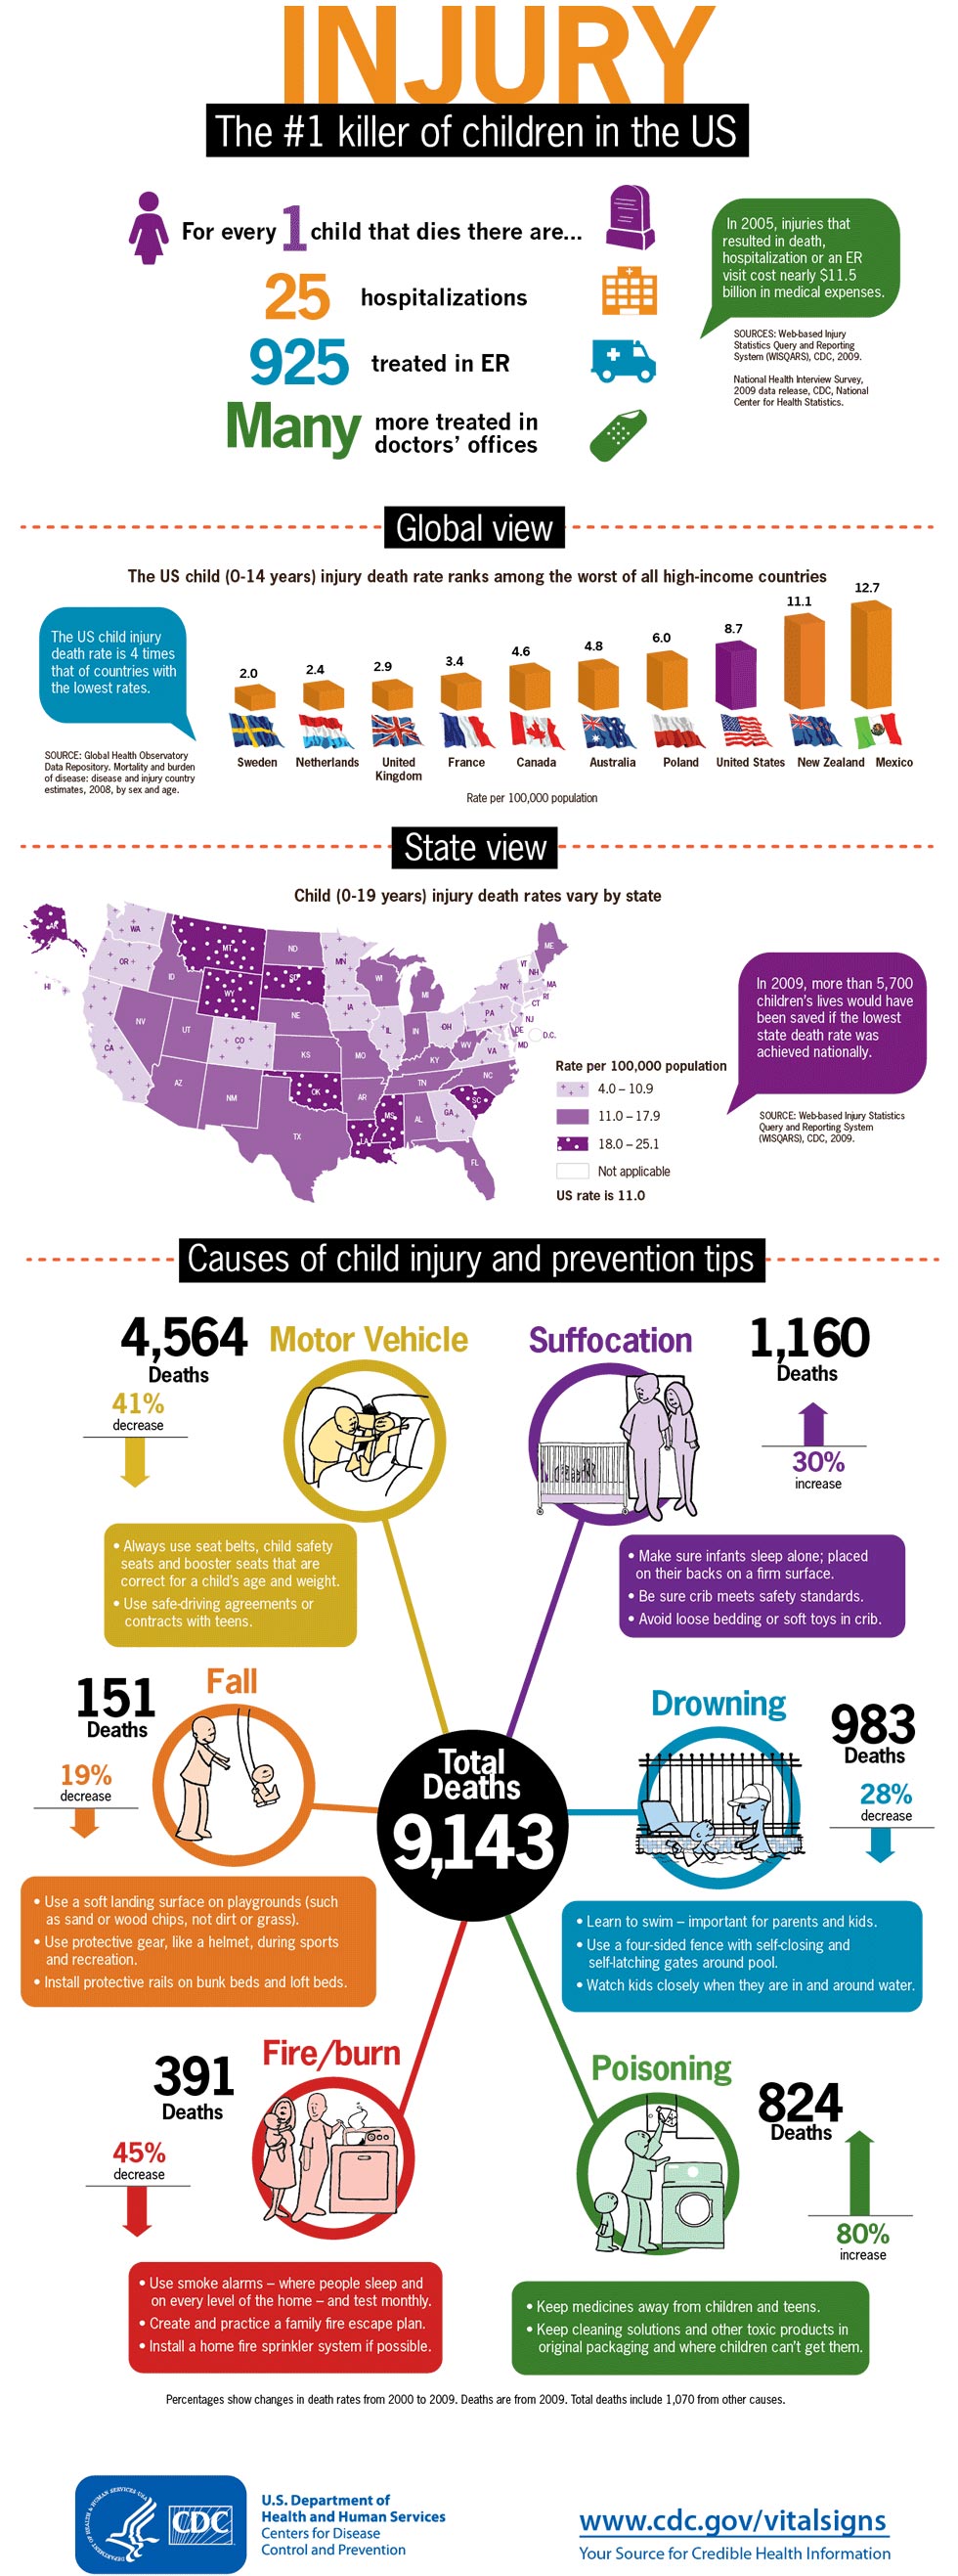 Injury: The #1 killer of children U.S.